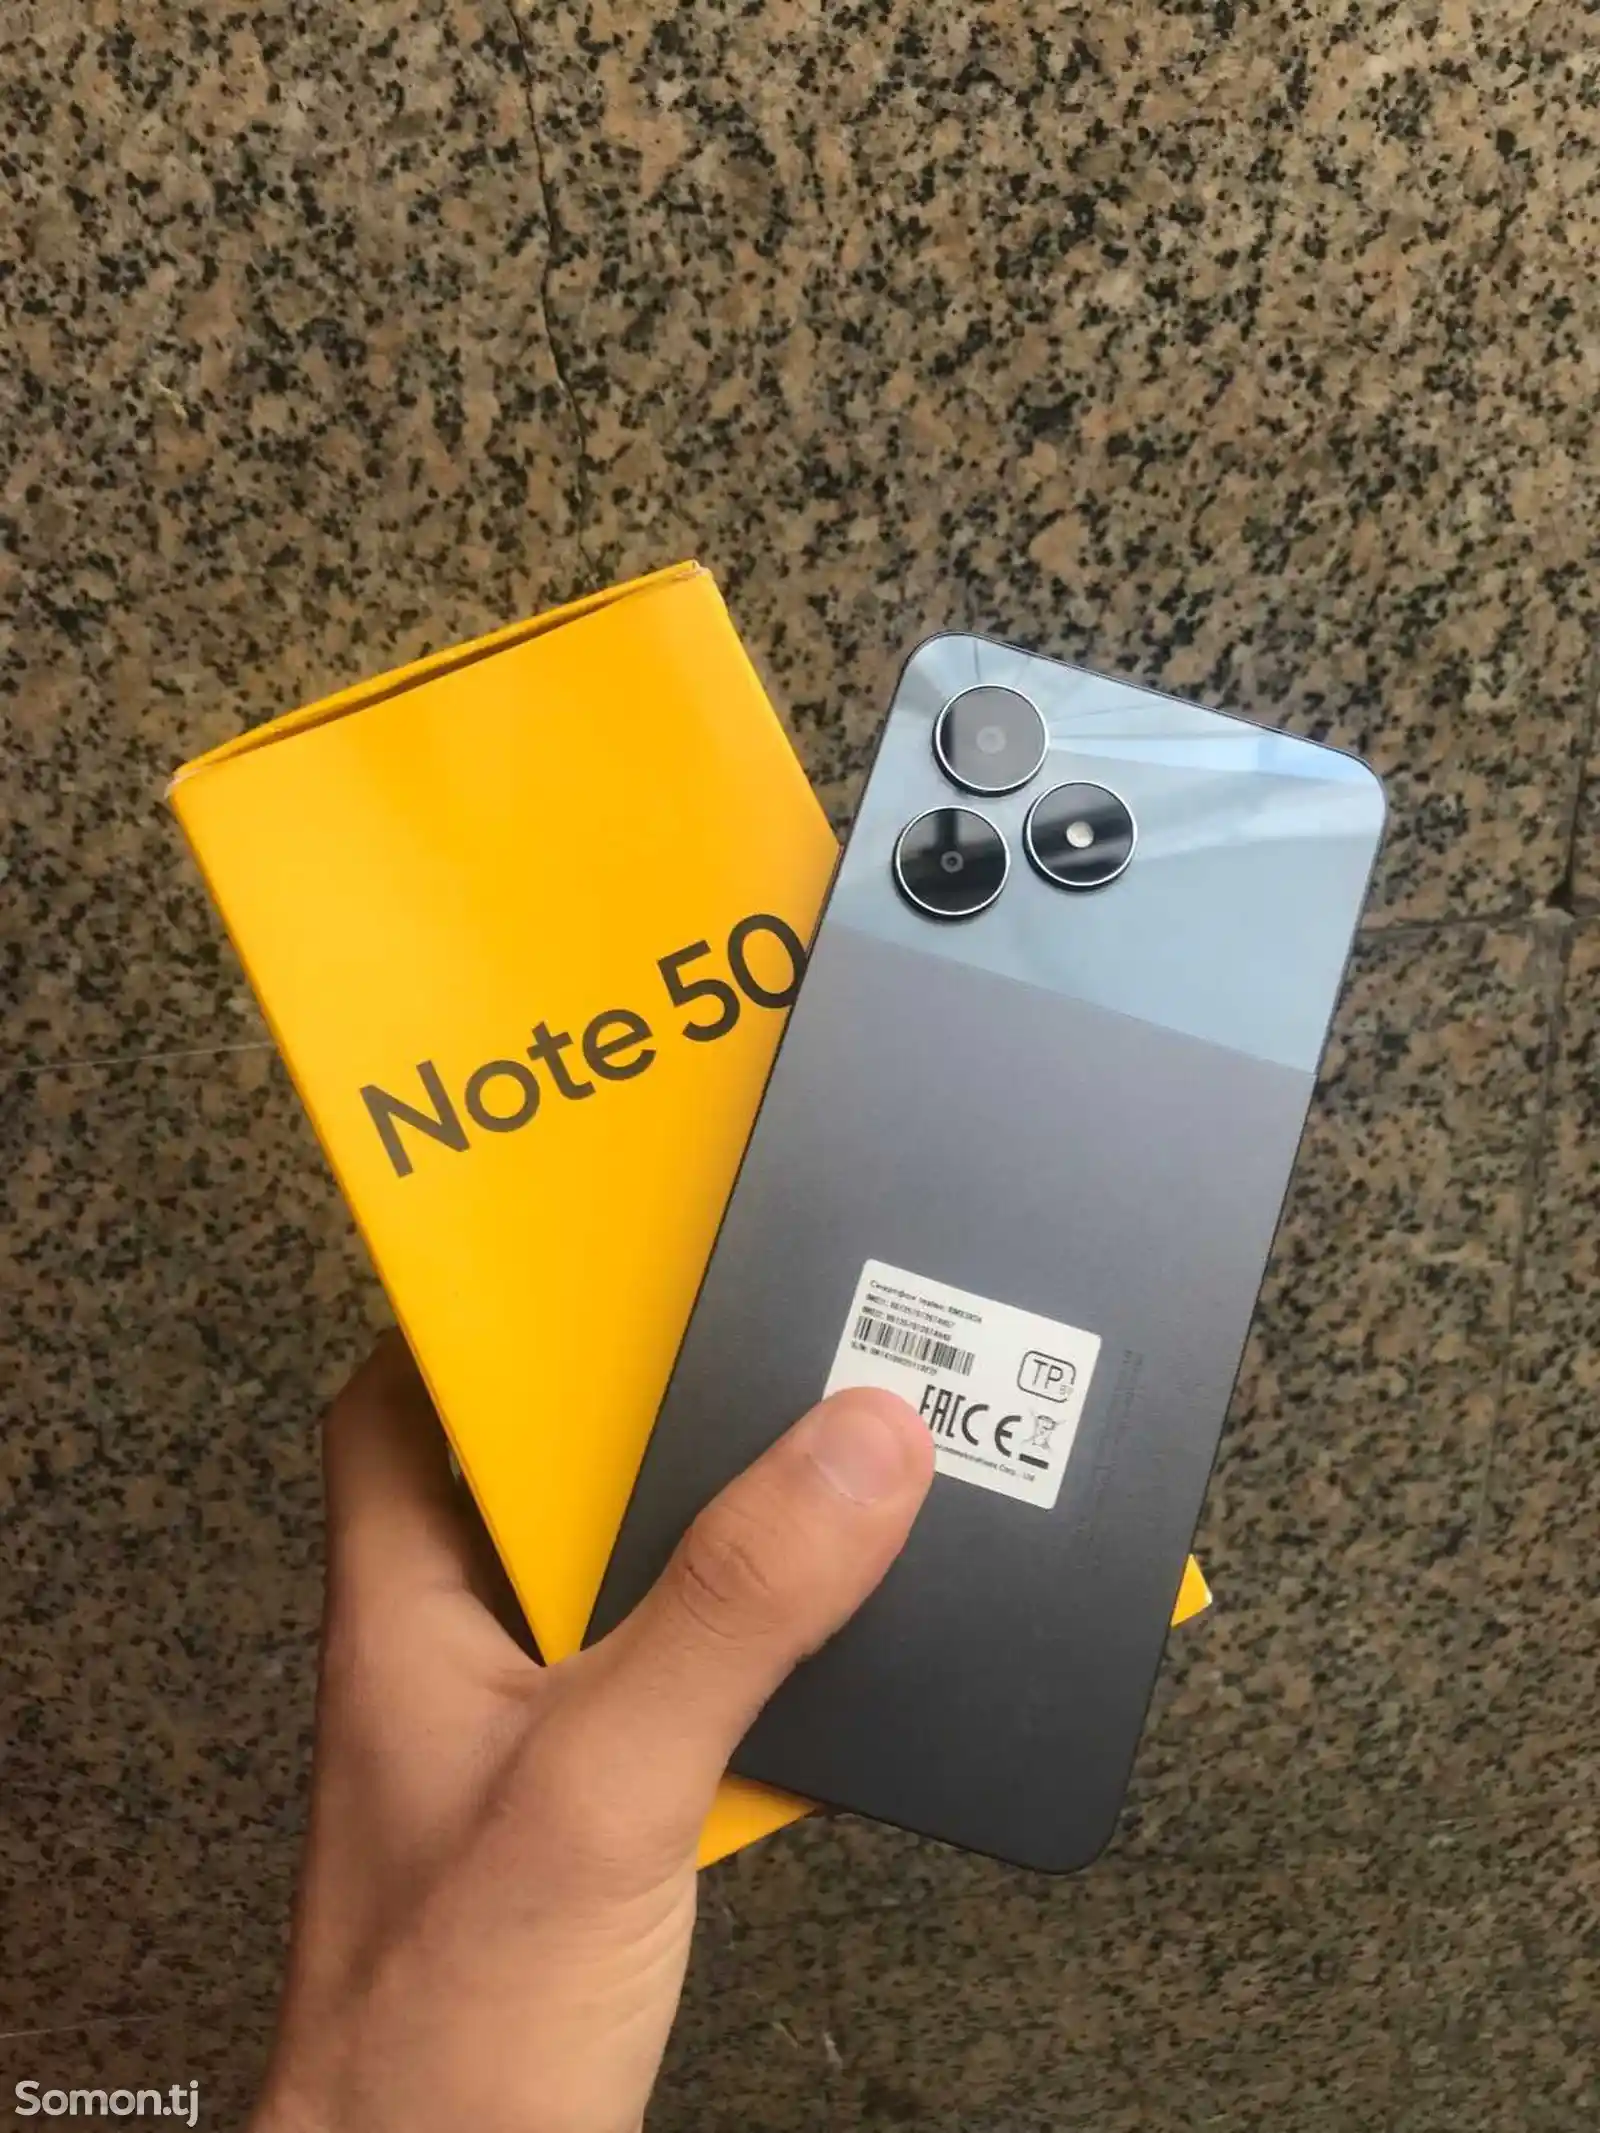 Realme Note 50-1